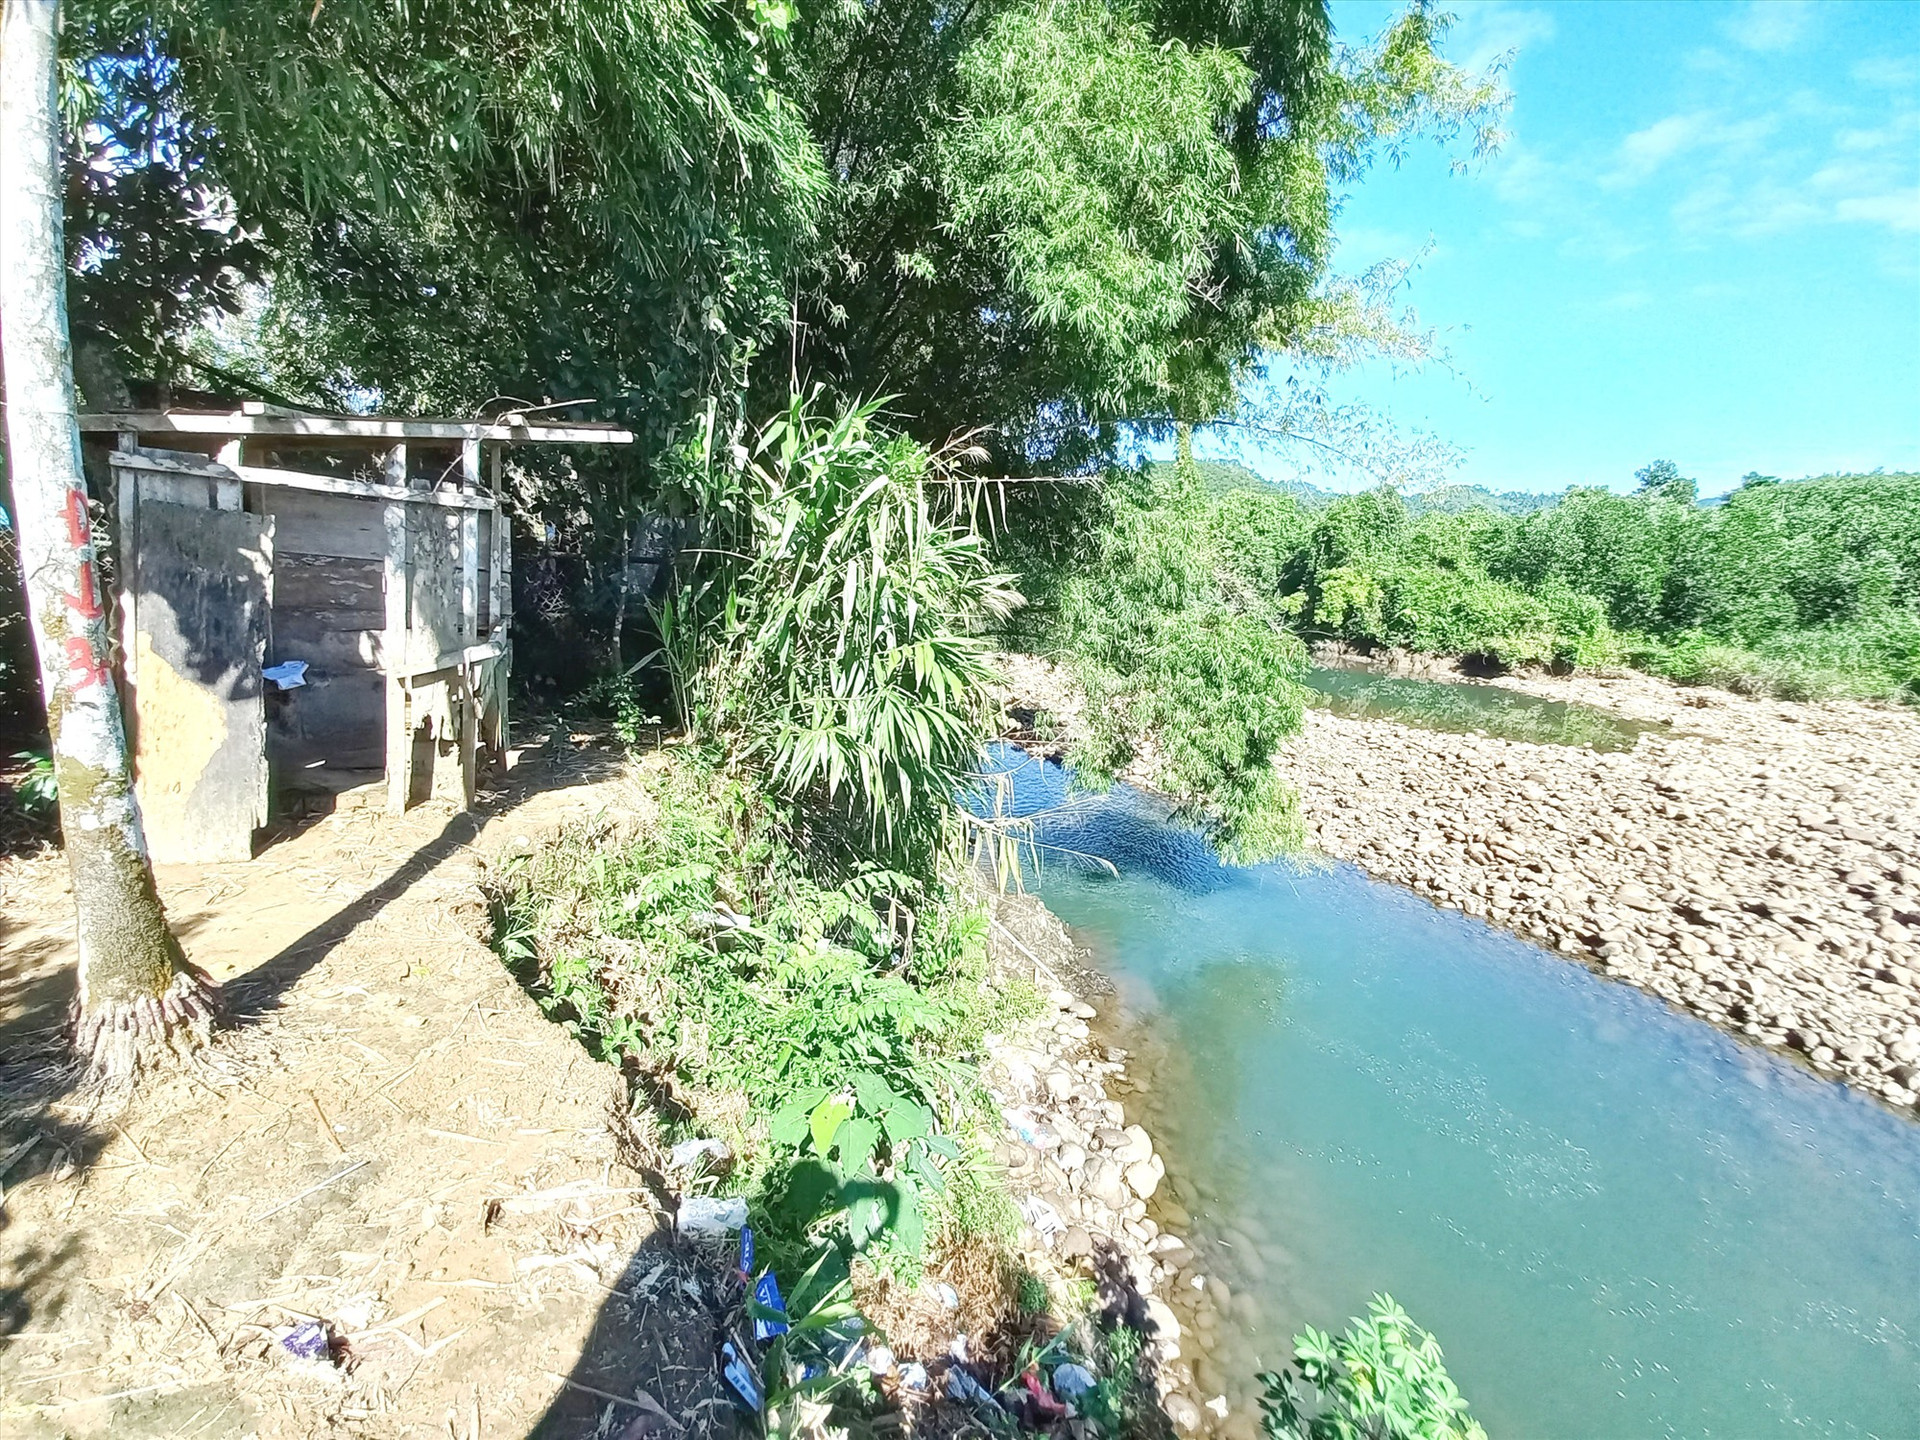 Sông Trường nhỏ hẹp, độ dốc lớn nên nước chảy xiết, bất thường đã gây xói lở vào đất của người dân xã Phước Hiệp. Ảnh: N.B